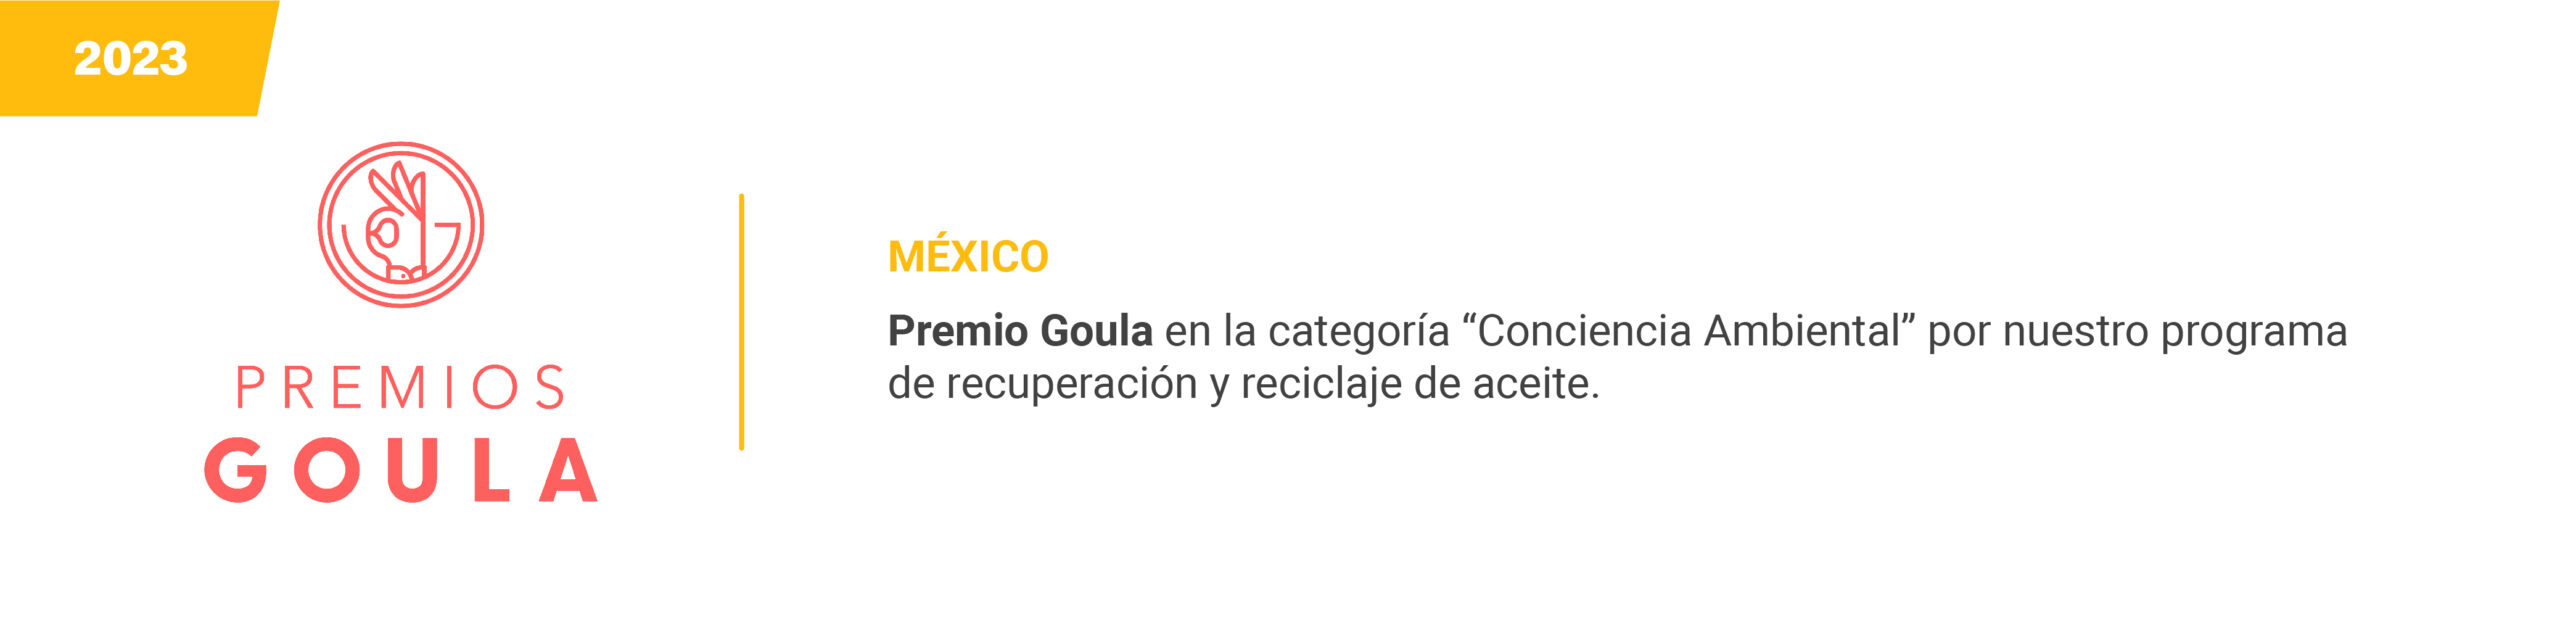 Guola - Mexico 2023